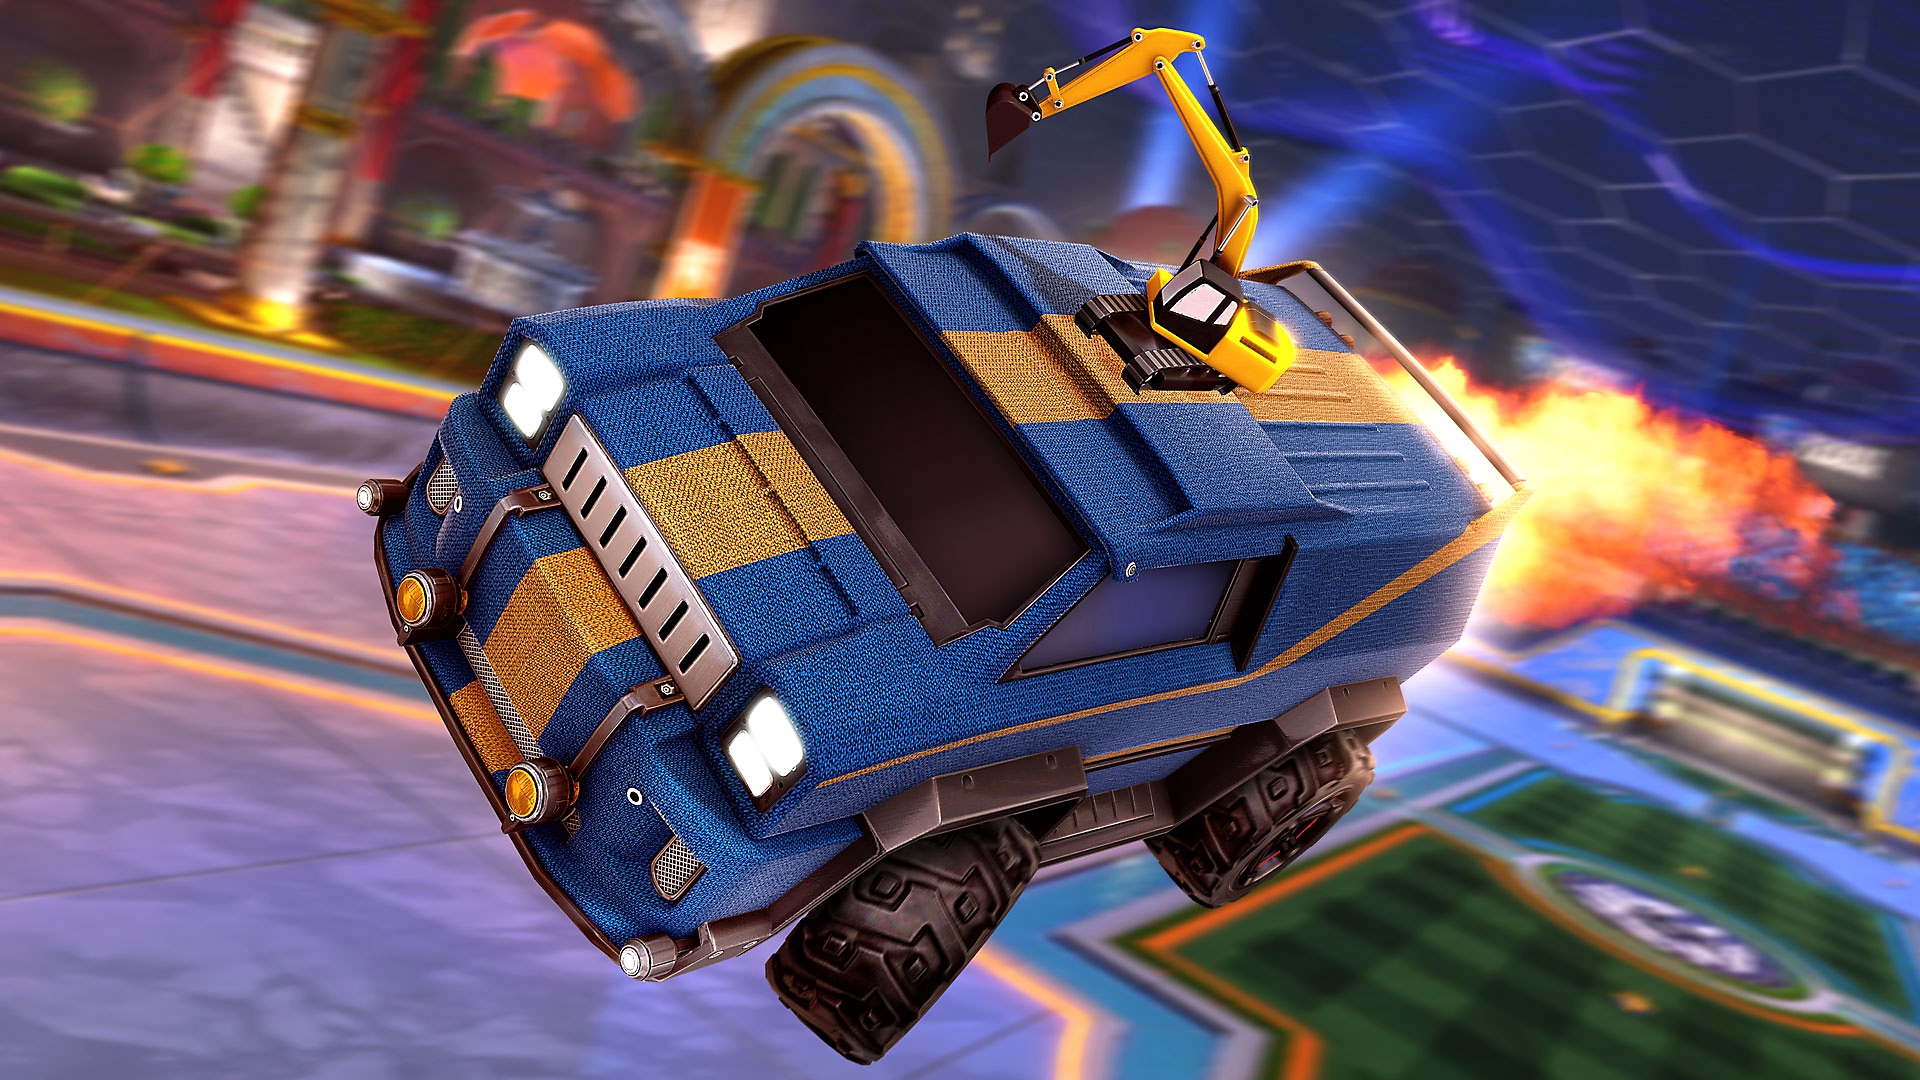 Rocket League screenshot showing a blue van with yellow racing stripe